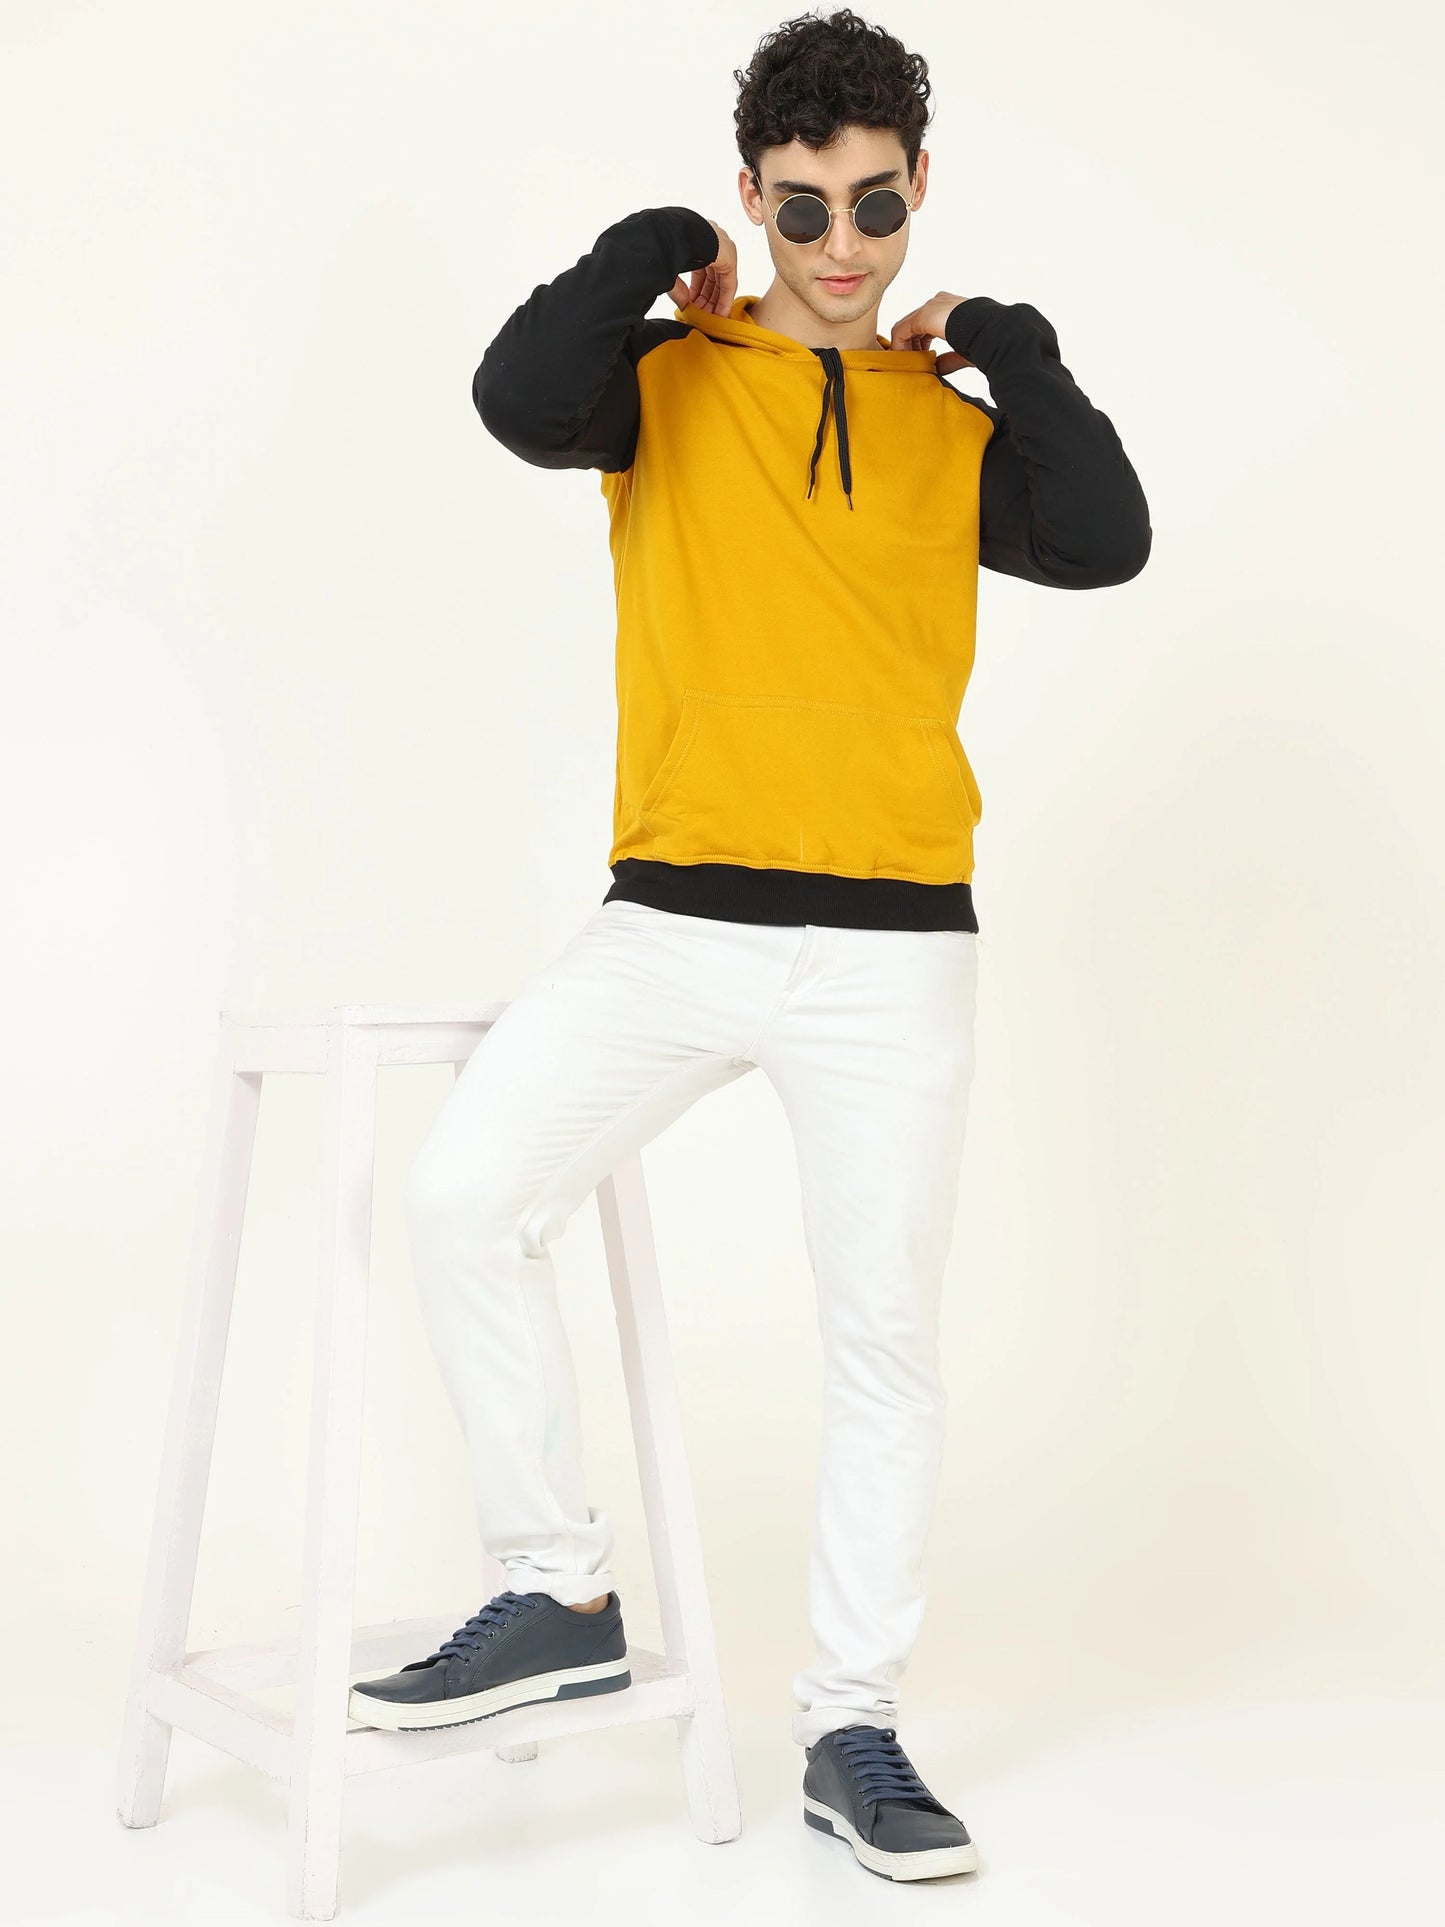 Fleximaa Men's Cotton Full Sleeve Color Block Hoodies/Sweatshirts - fleximaa-so